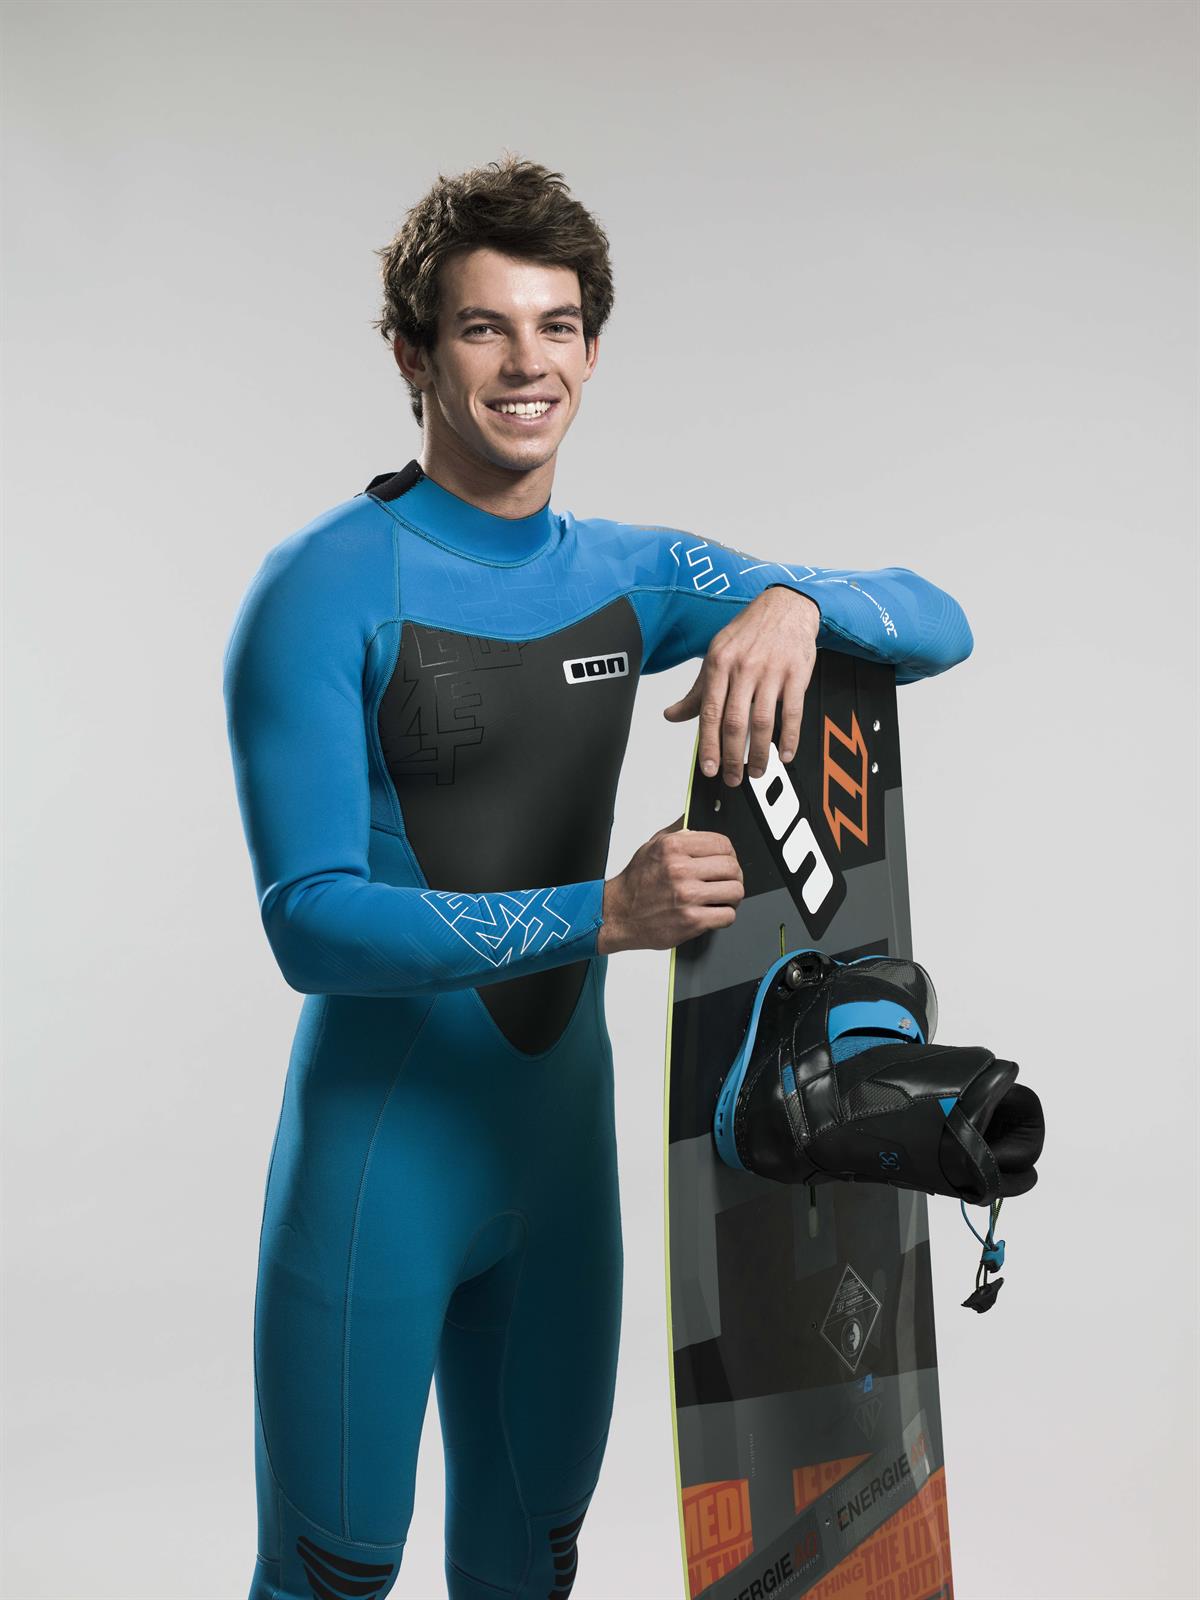 Mitglied der Energie AG-Sportfamilie: Stefan Spiessberger (Kite-Surfing)